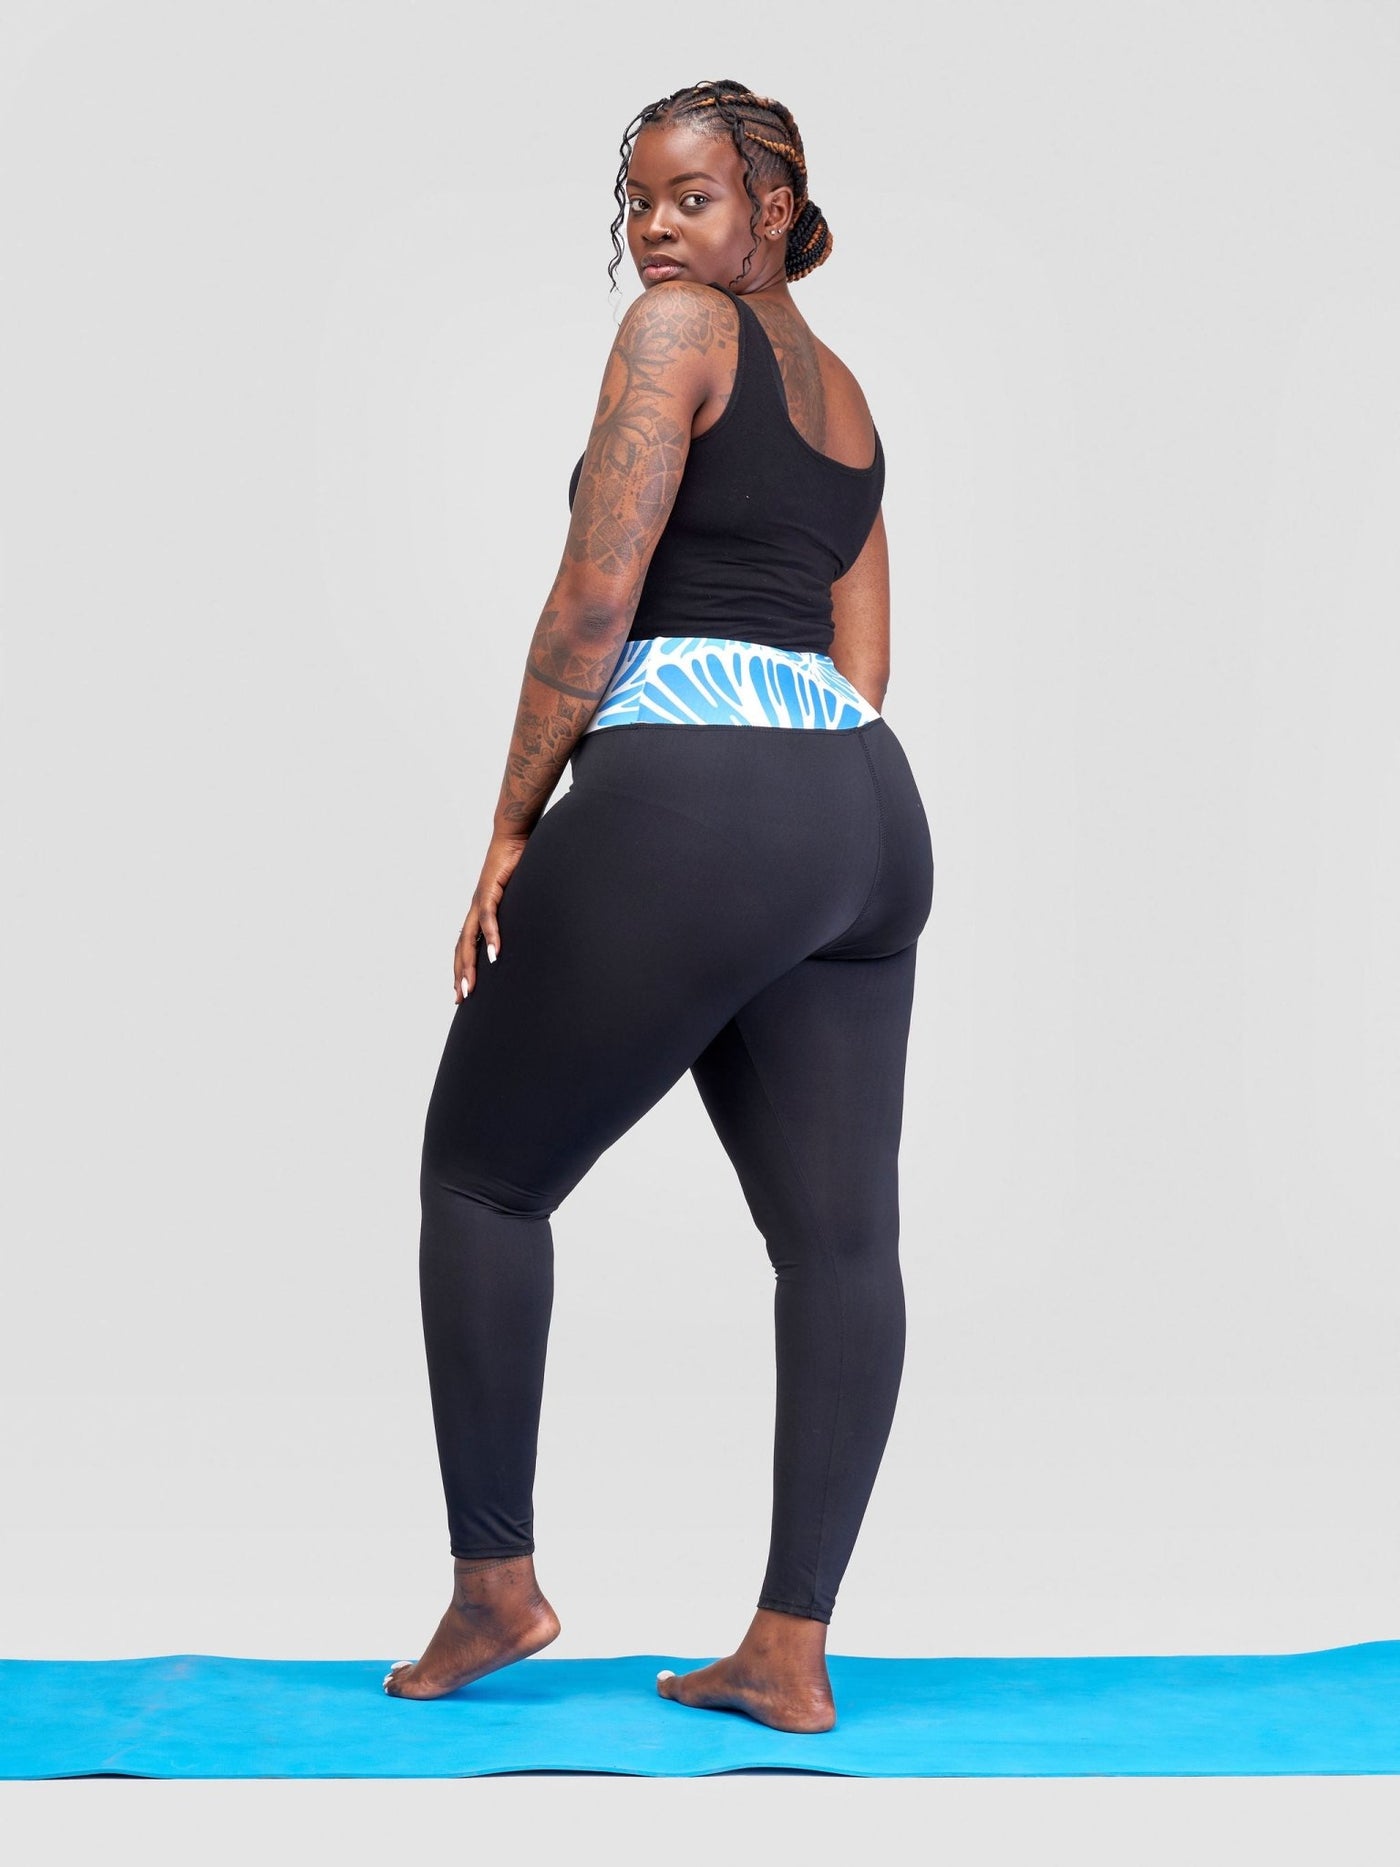 Vivo Lero Fitness Leggings - Black + Blue Kiwi Print - Shopzetu